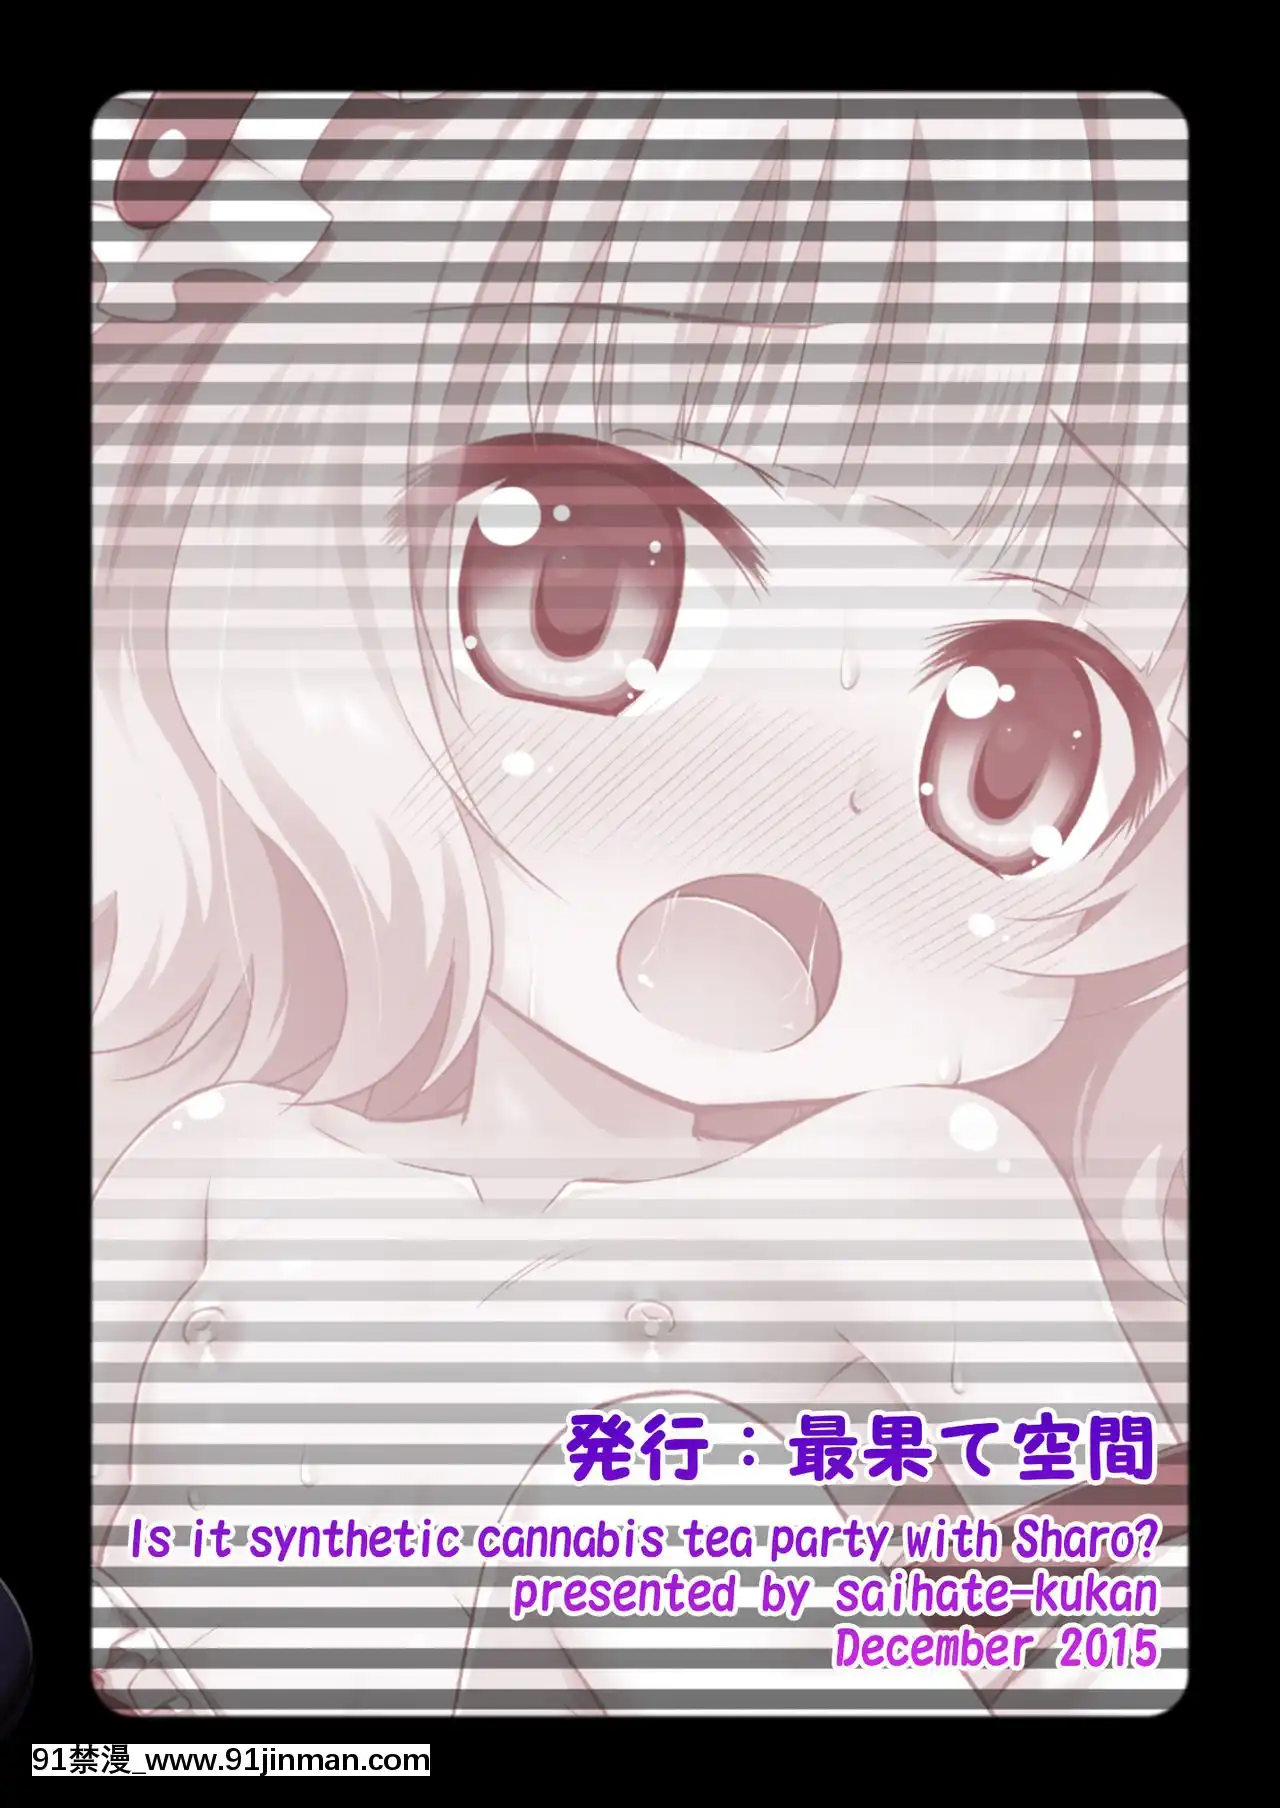 [Văn phòng của Shounen] [Không gian cuối cùng (Hino Hino)] Syaro chan và bữa tiệc trà thảo mộc vi phạm pháp luật?   (Đơn hàng có phải là một con thỏ không?  ) [Phiên bản DL]【truyện tranh giấc mơ ngọt ngào】